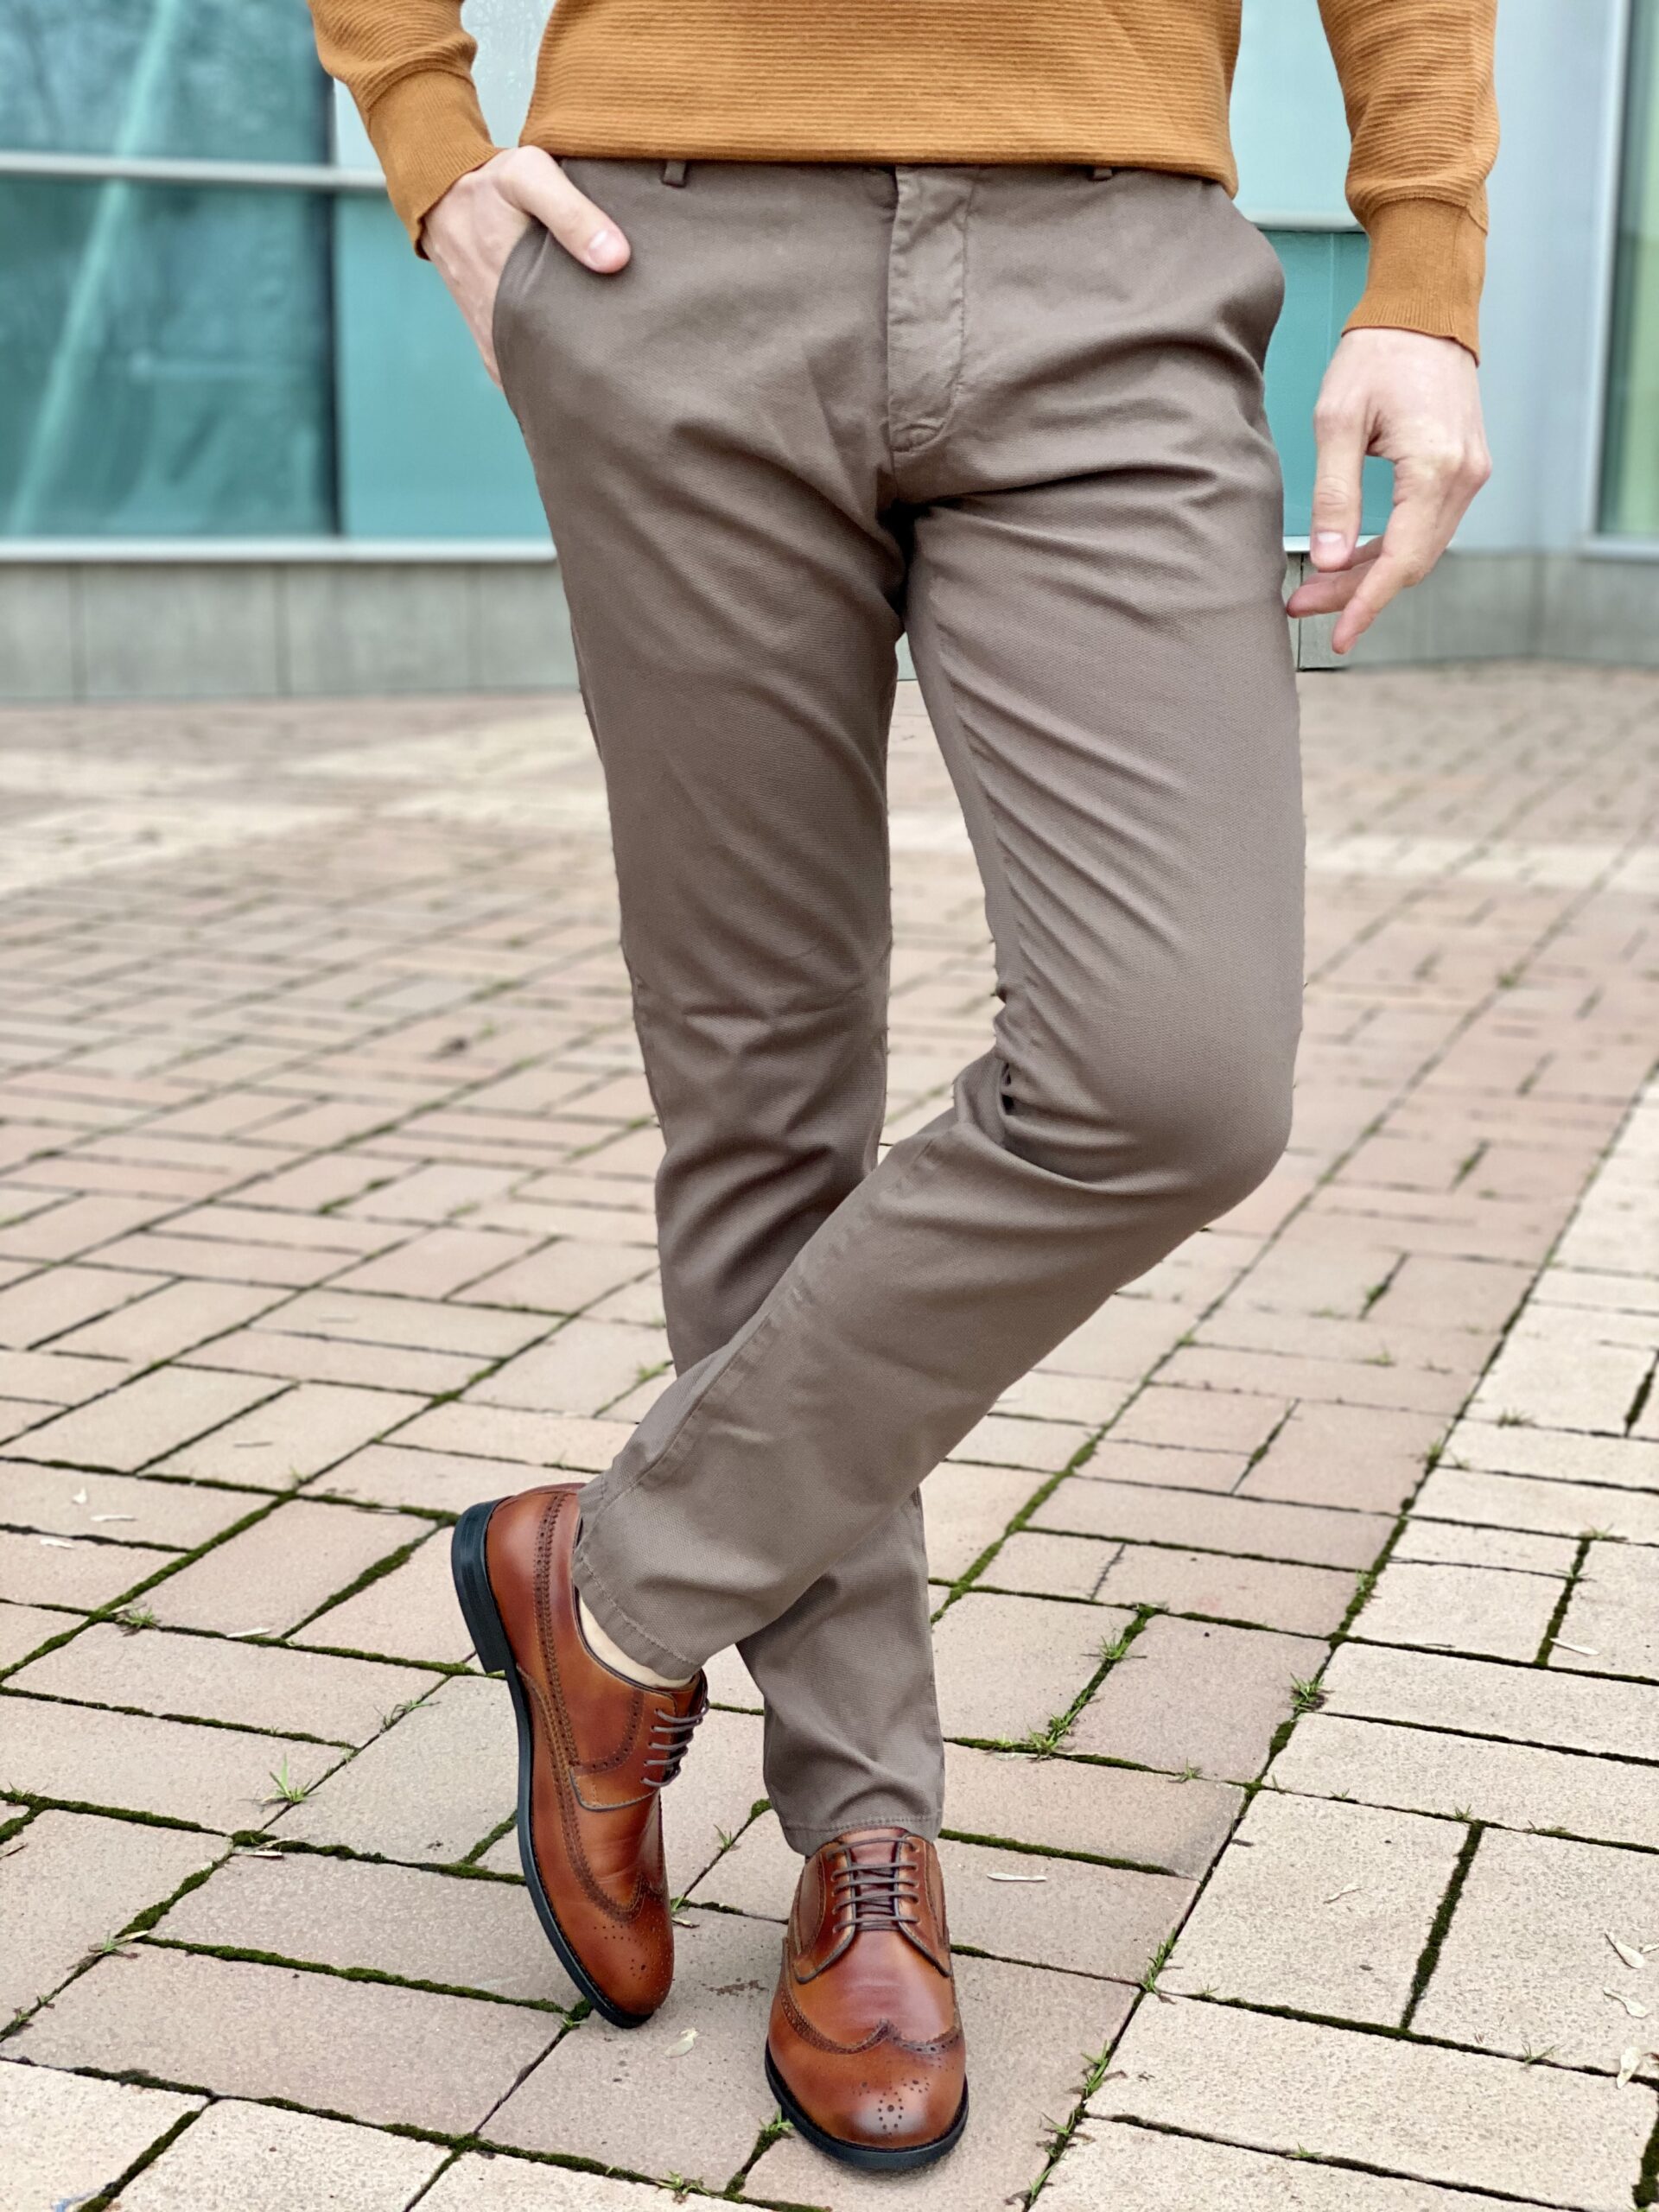 Мужские брюки серо-коричневого цвета. Арт.: 2845 – купить в магазинемужской одежды Smartcasuals